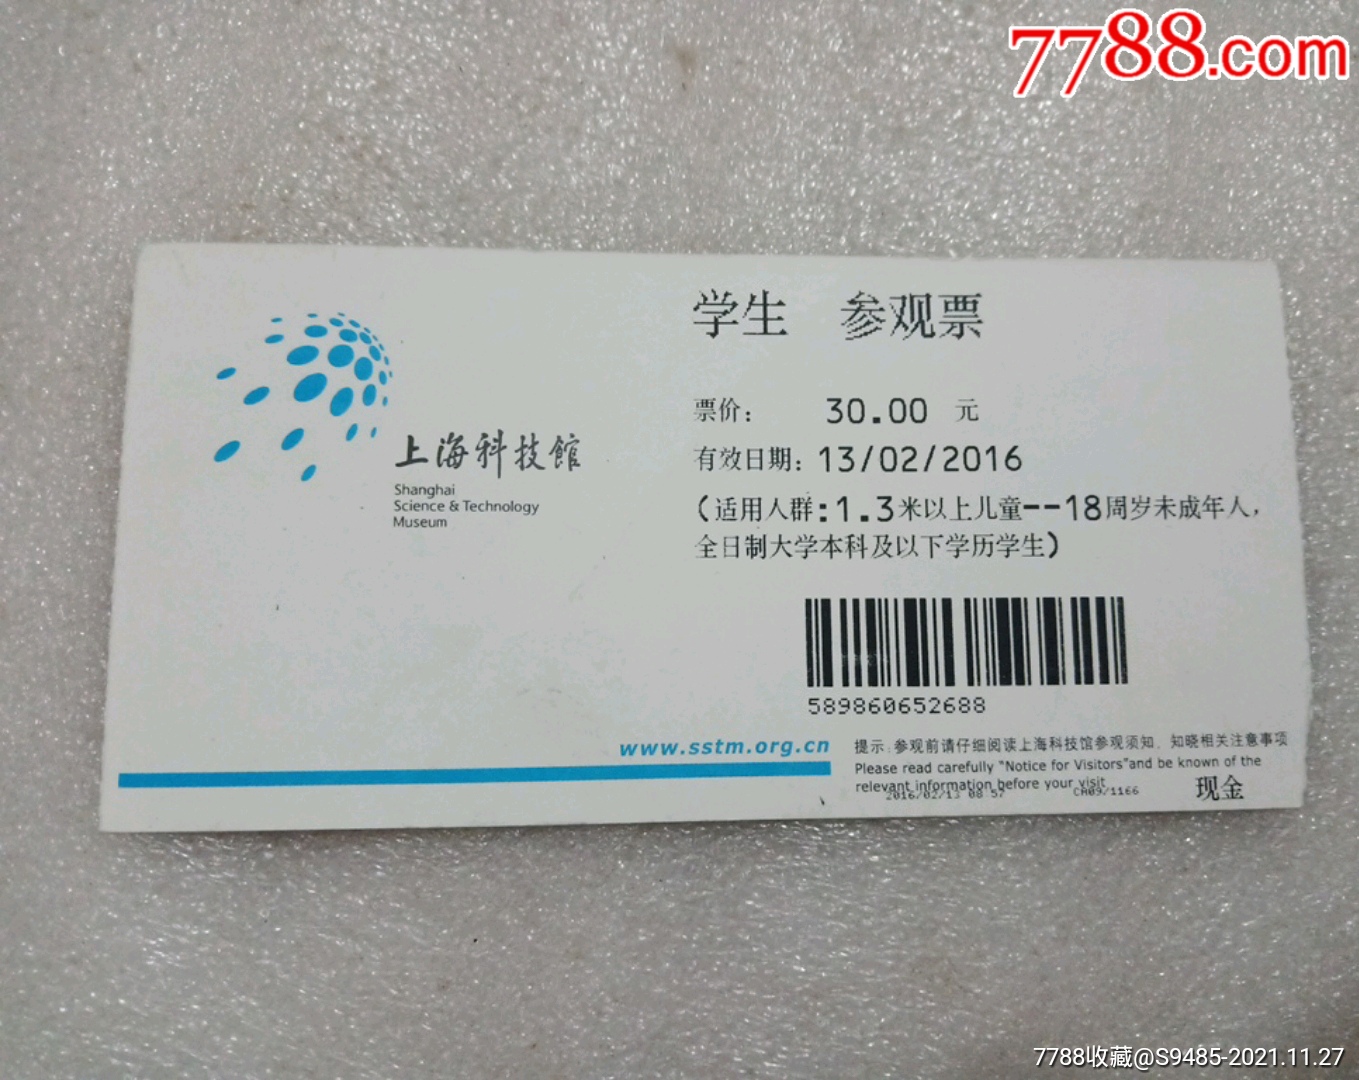 上海科技馆学生票-价格:2元-se83998015-旅游景点门票-零售-7788收藏